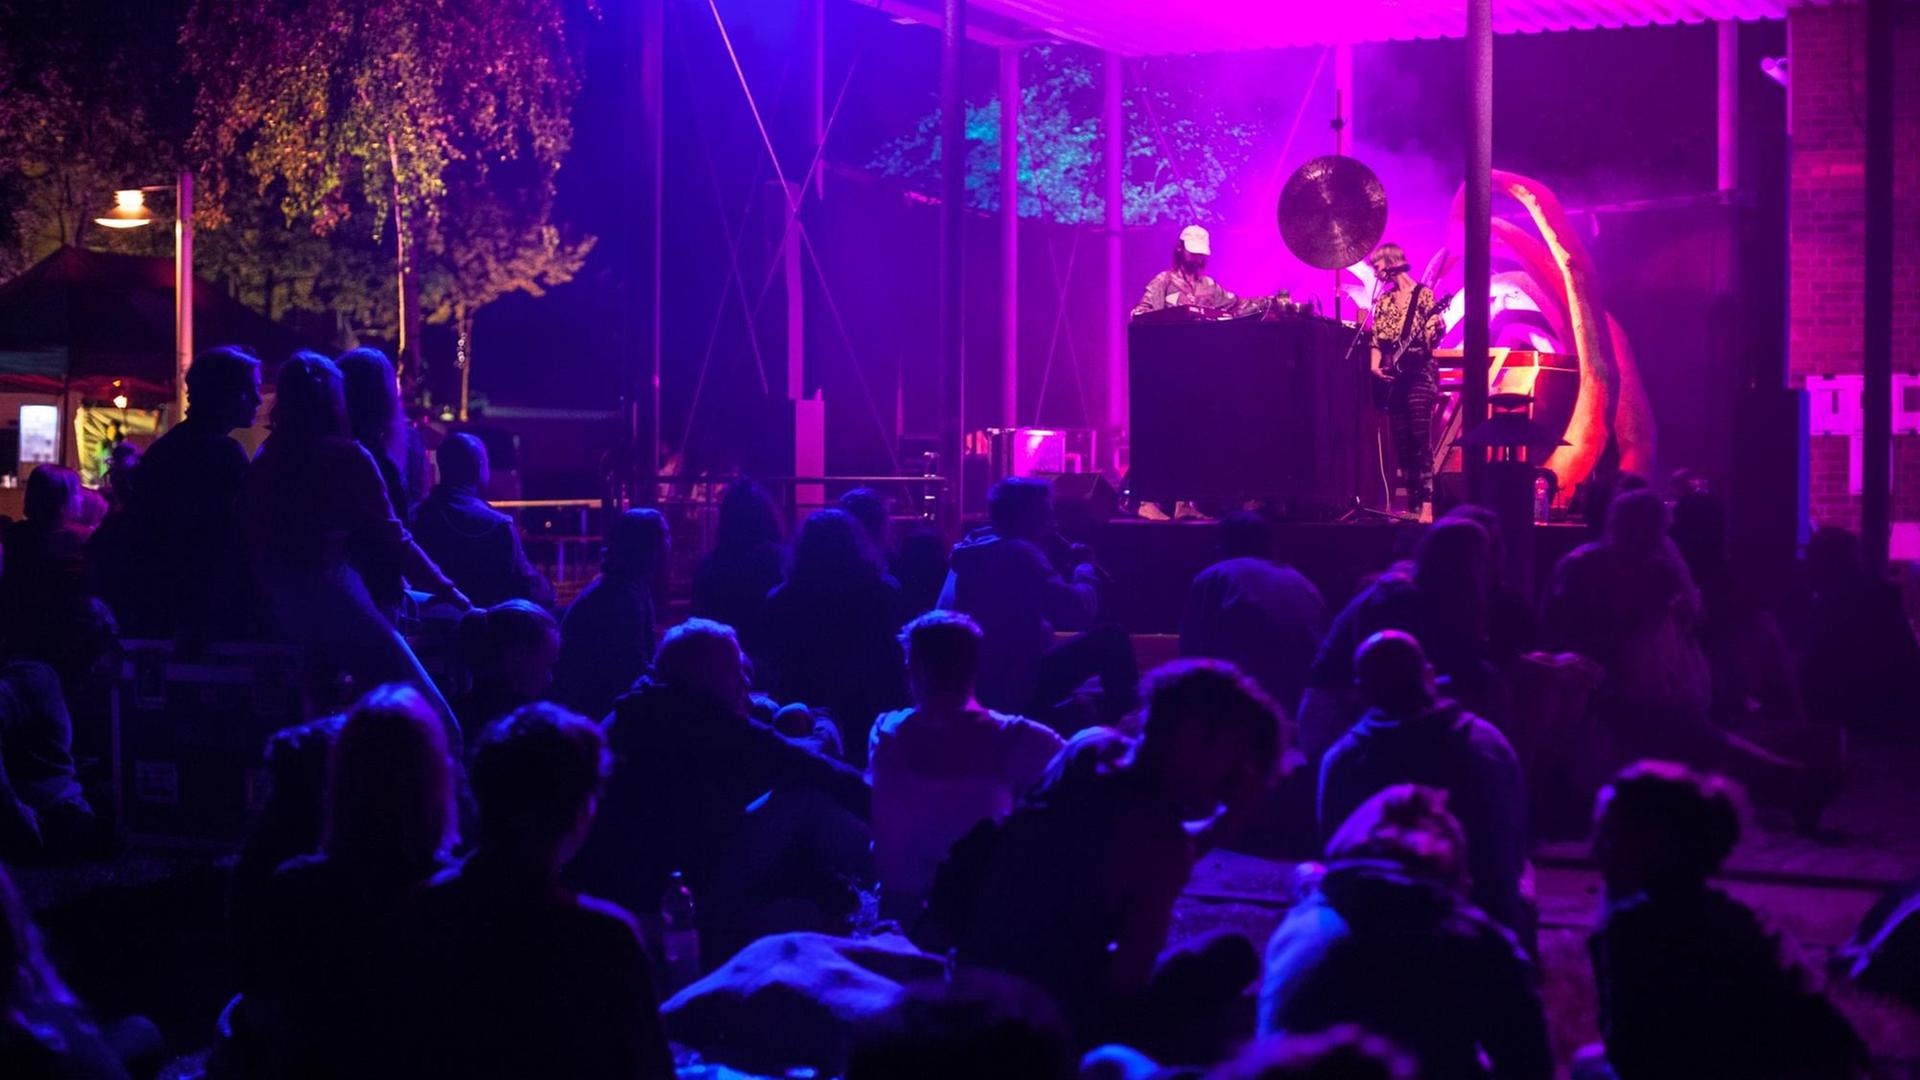 Zuschauer sitzen vor einer in lila und blau angestrahlten Bühne, auf der ein DJ und ein Gitarrist musizieren